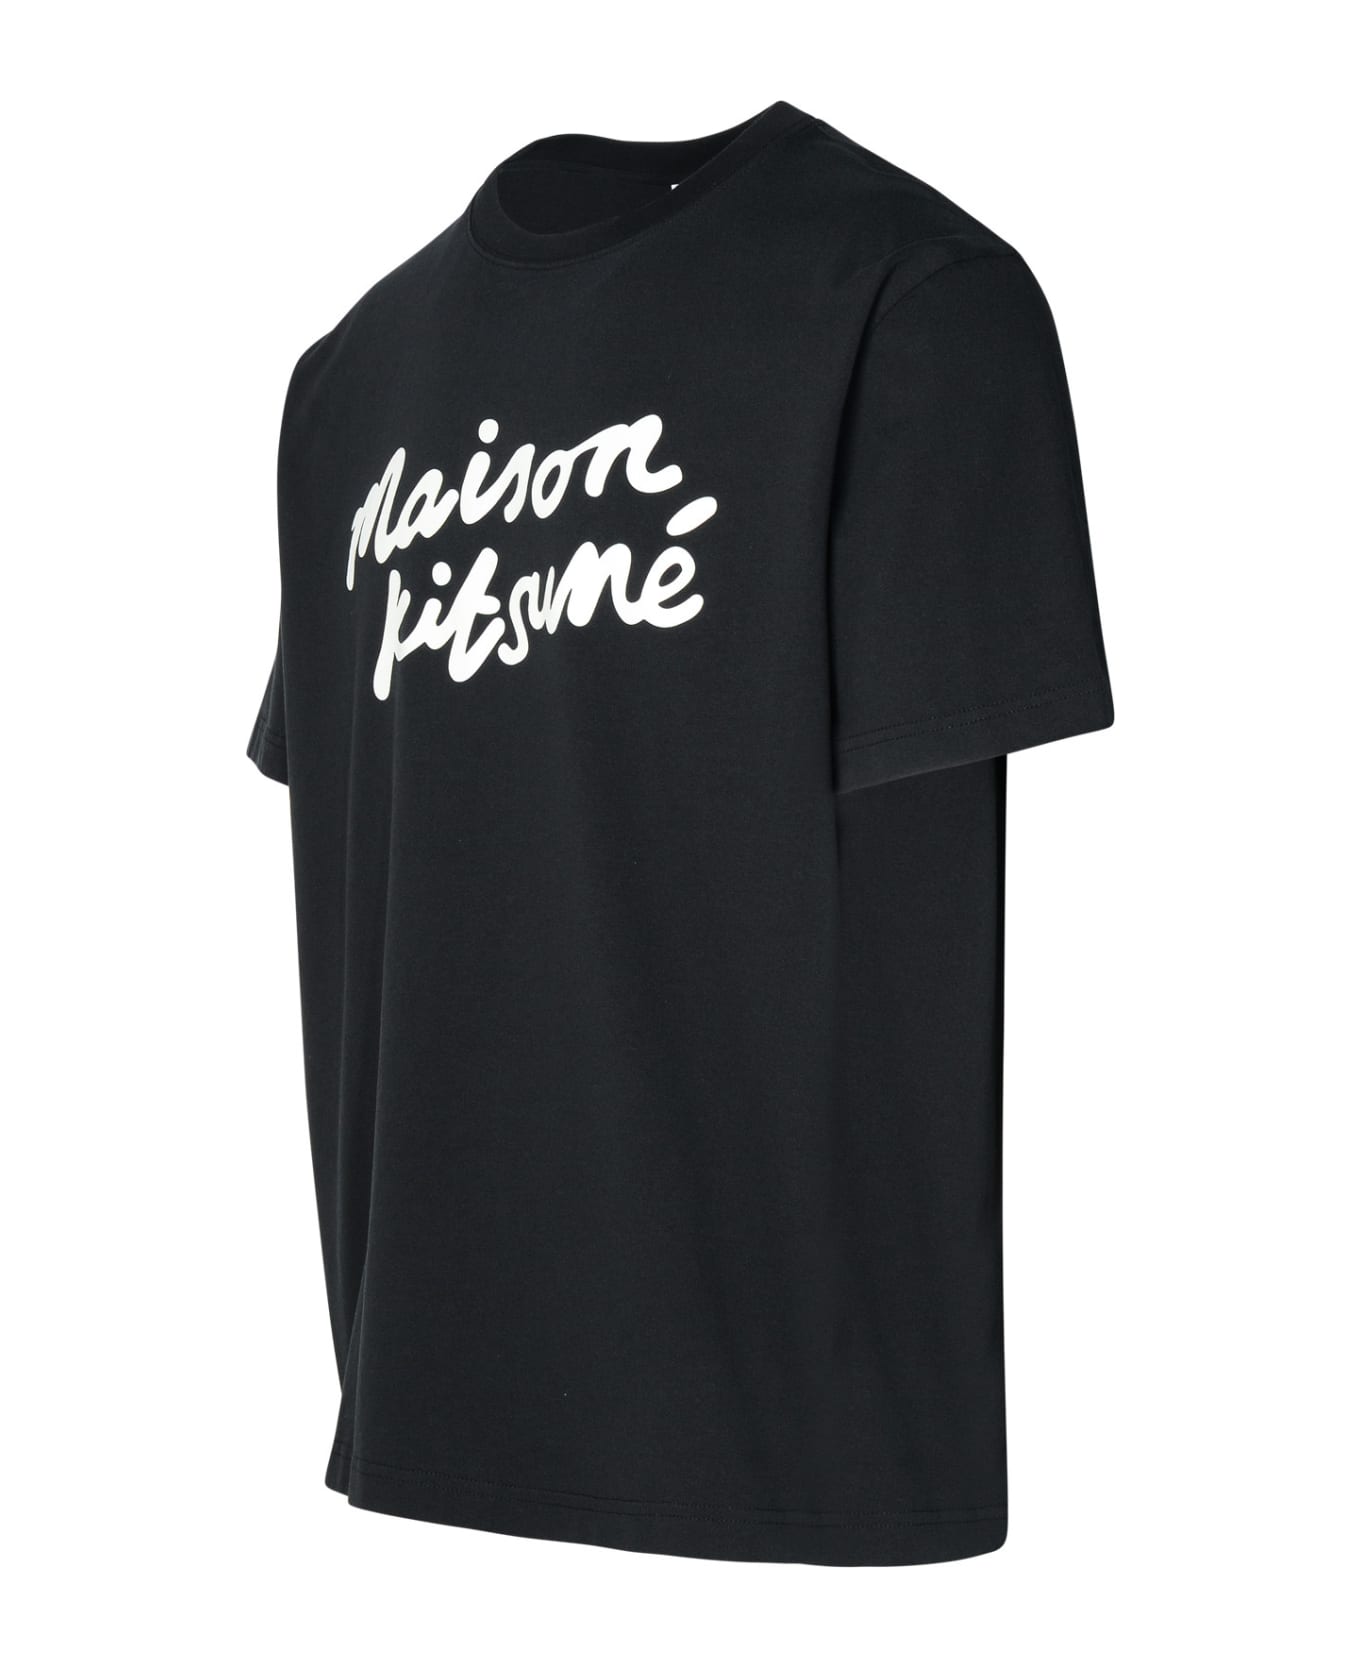 Maison Kitsuné Black Cotton T-shirt - Black